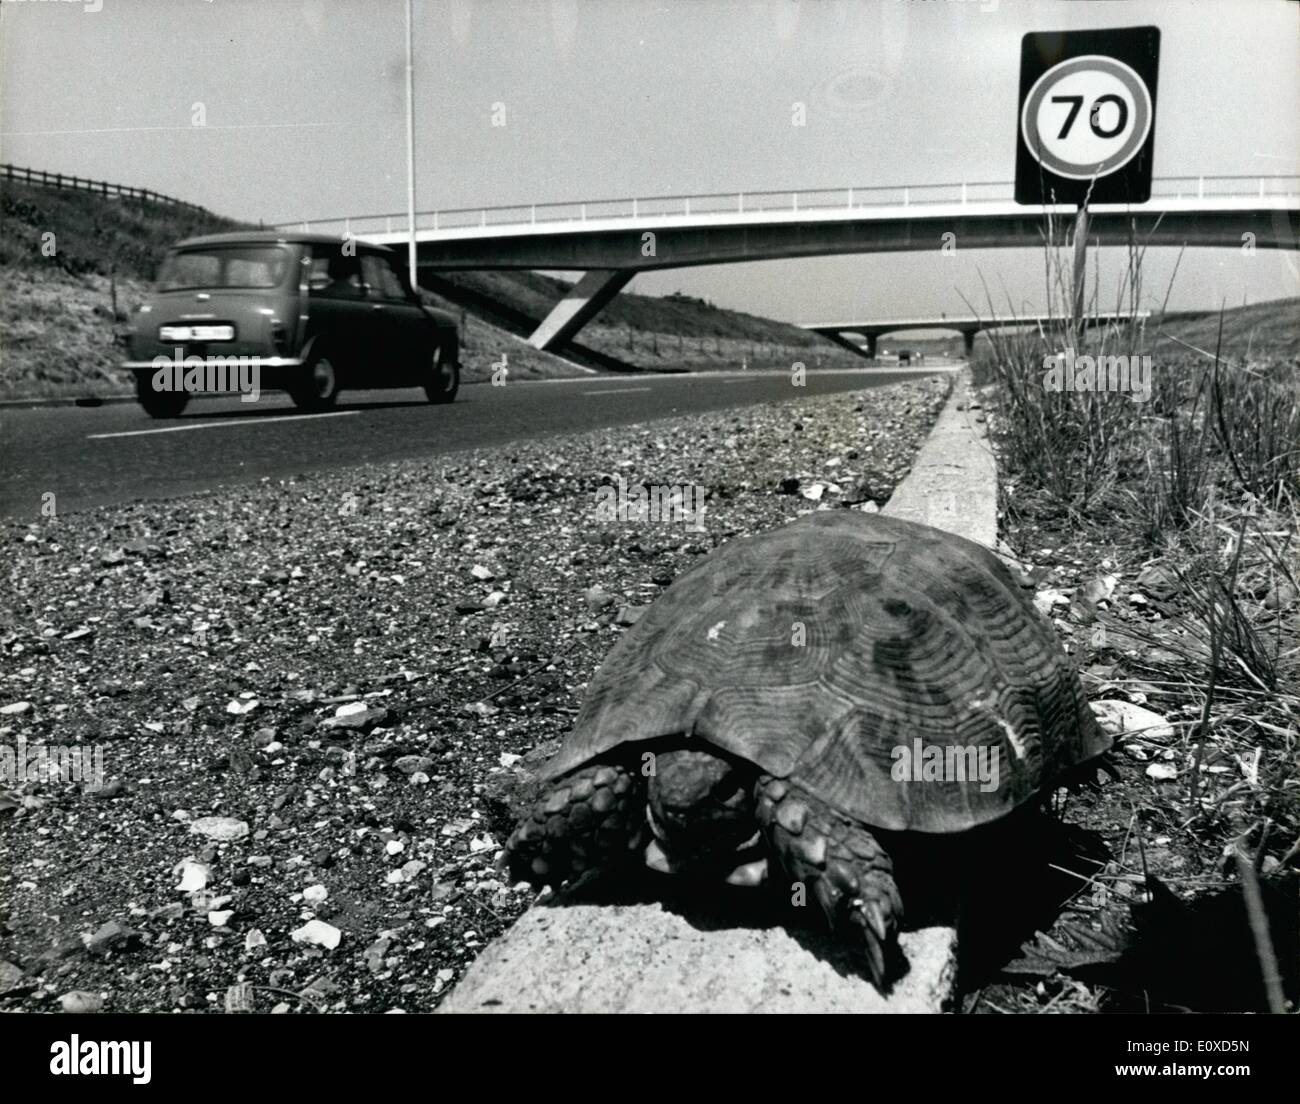 Juin 06, 1966 - 6 000 tortues à l'aéroport de Londres : la L.R..P.C.S. Hostel à l'aéroport de Londres avait un agrange ensemble de visiteurs hier - 6 000 tortues. Elles avaient été importées par bateau à partir de l'Afrique du Nord, mais en raison d'un désaccord entre le fournisseur et l'importateur, ils devaient être retournés à domicile. Photo : Une des tortues a été prise pour une promenade le long de la proximité de M 4 par le photographe - peut-être qu'il voulait travailler sur combien de temps il faudrait une tortue sans-abri pour faire son chemin vers le Maroc. Banque D'Images